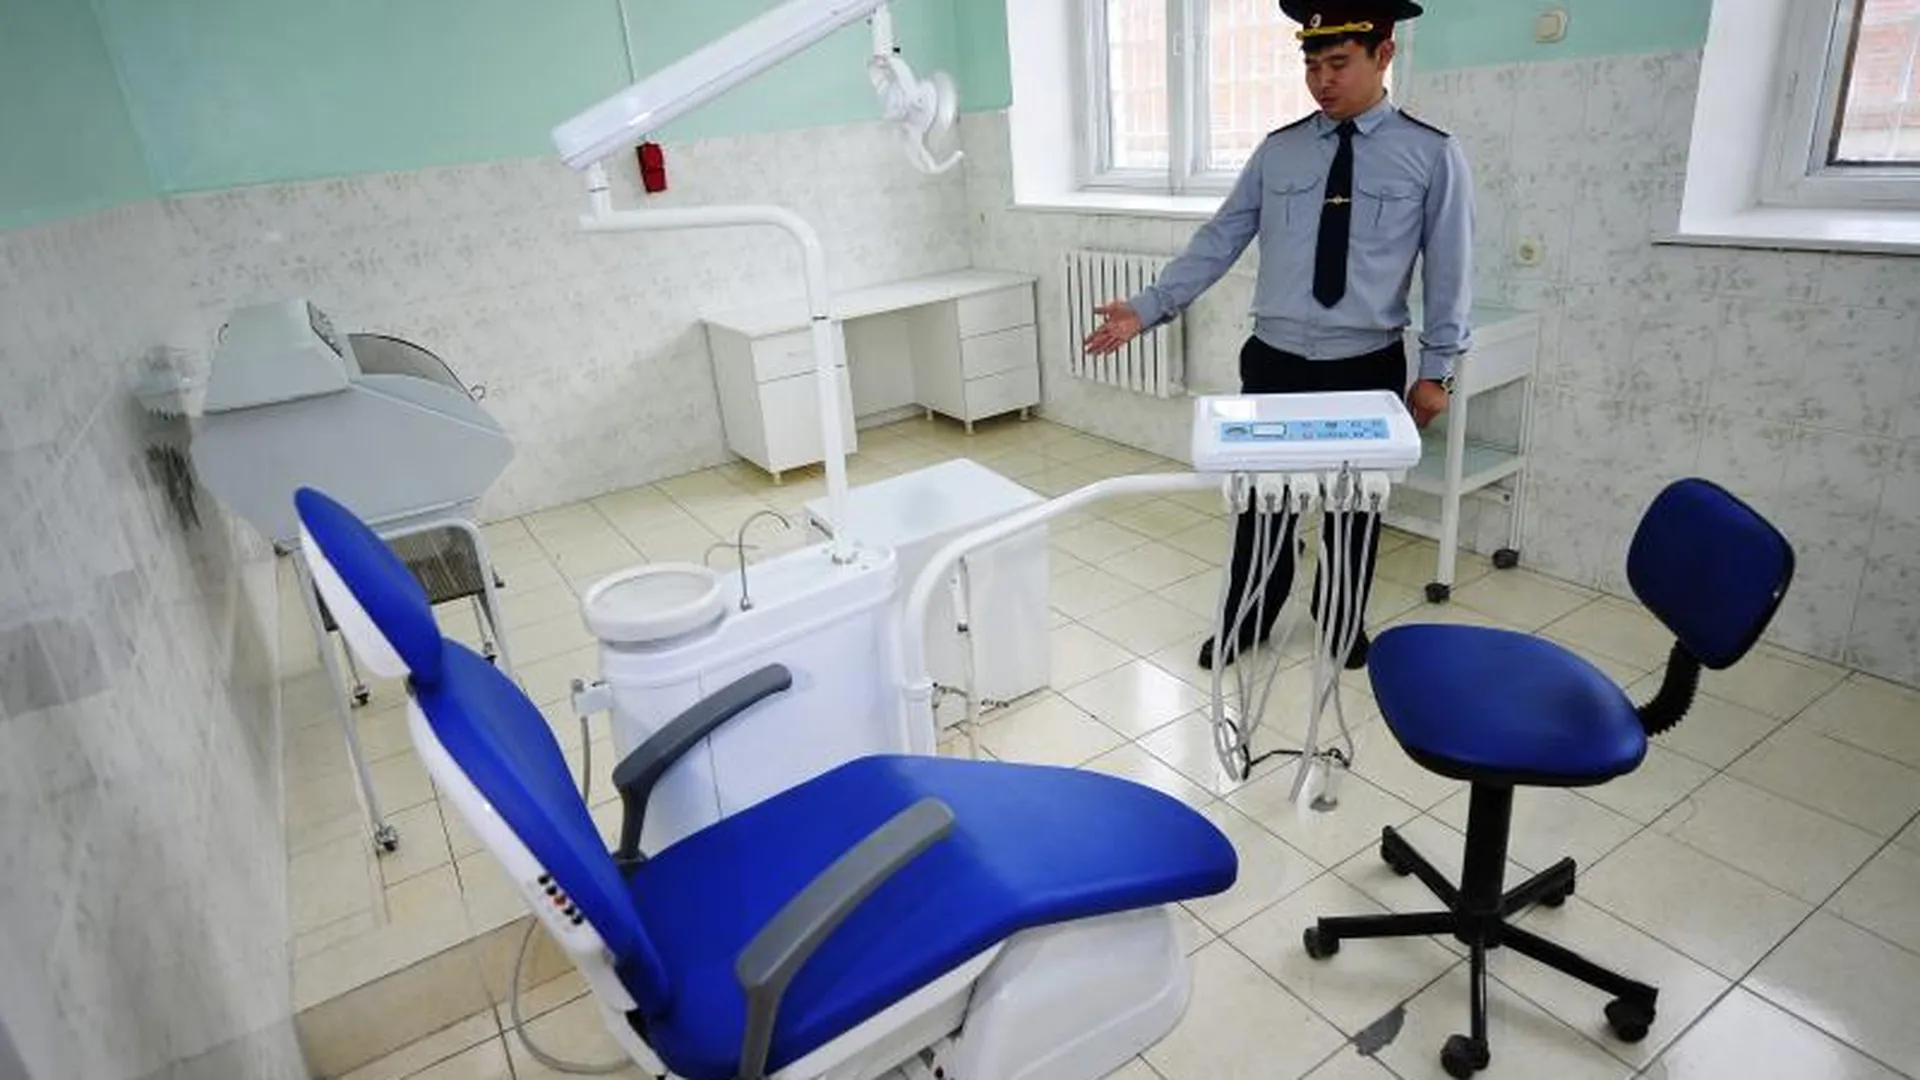   Стоматолог из Наро-Фоминска, которого пациентка обвинила в побоях, настаивает на своей невиновности